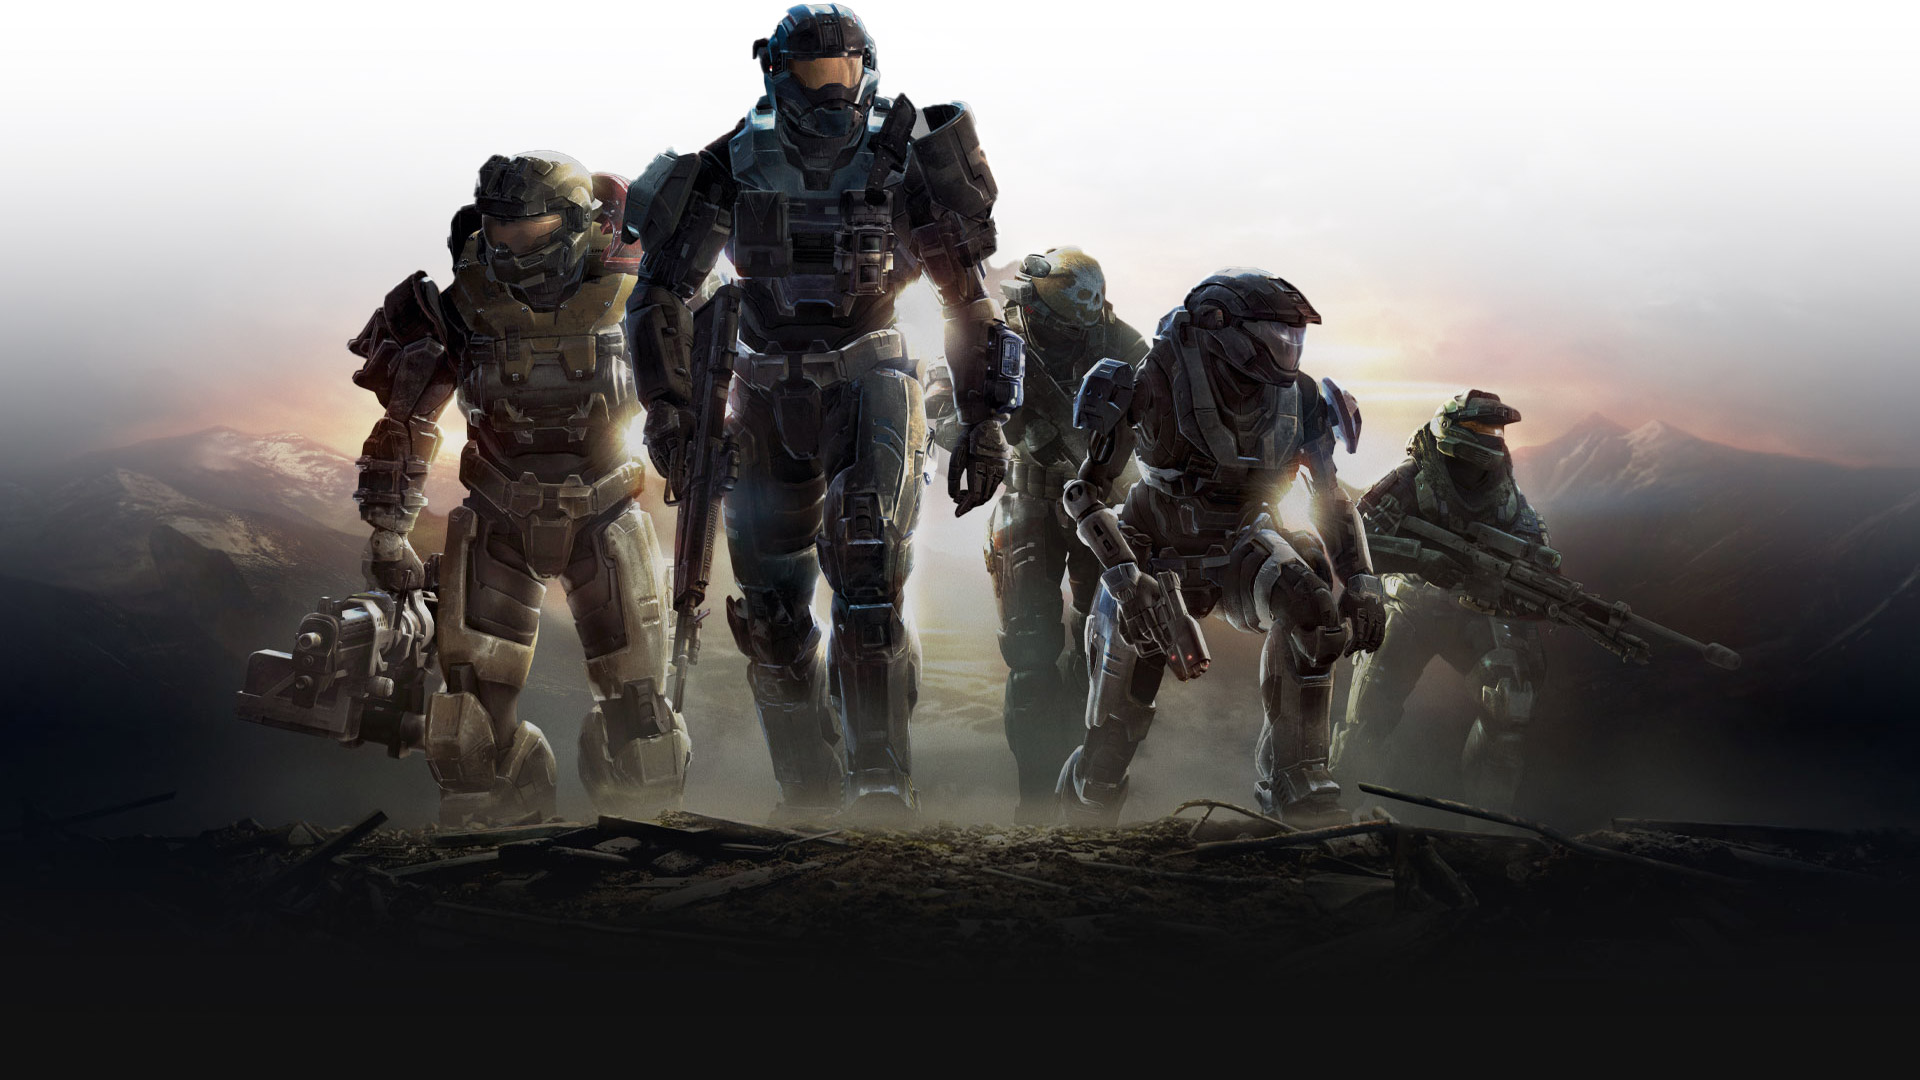 Os Spartans de Halo Reach sobem uma colina com as armas prontas